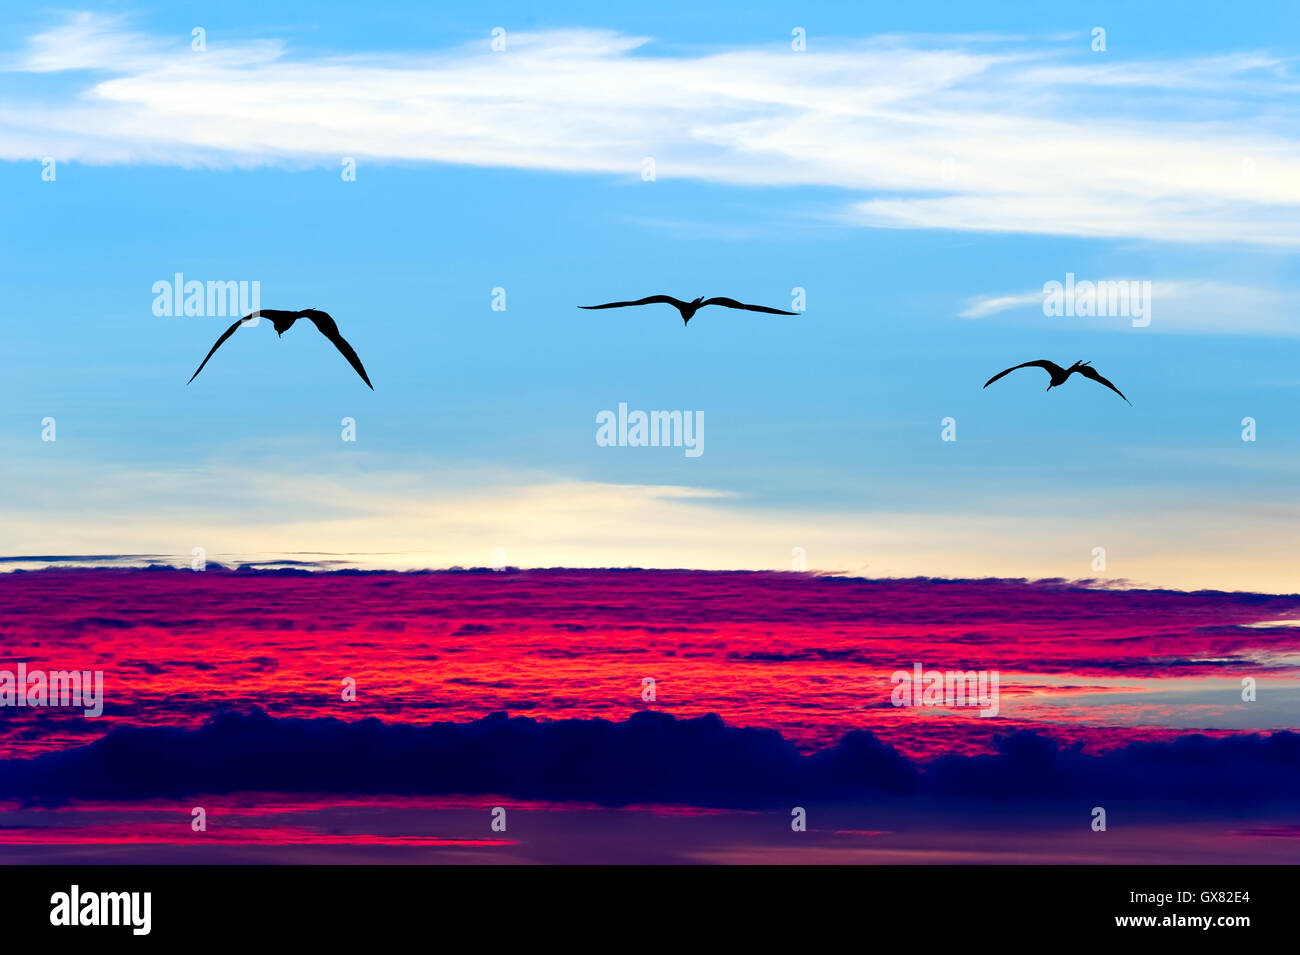 Uccelli sagome volanti è tre uccelli in volo con ali stese soaring su una surreale ethereal blue sky cloudscape. Foto Stock